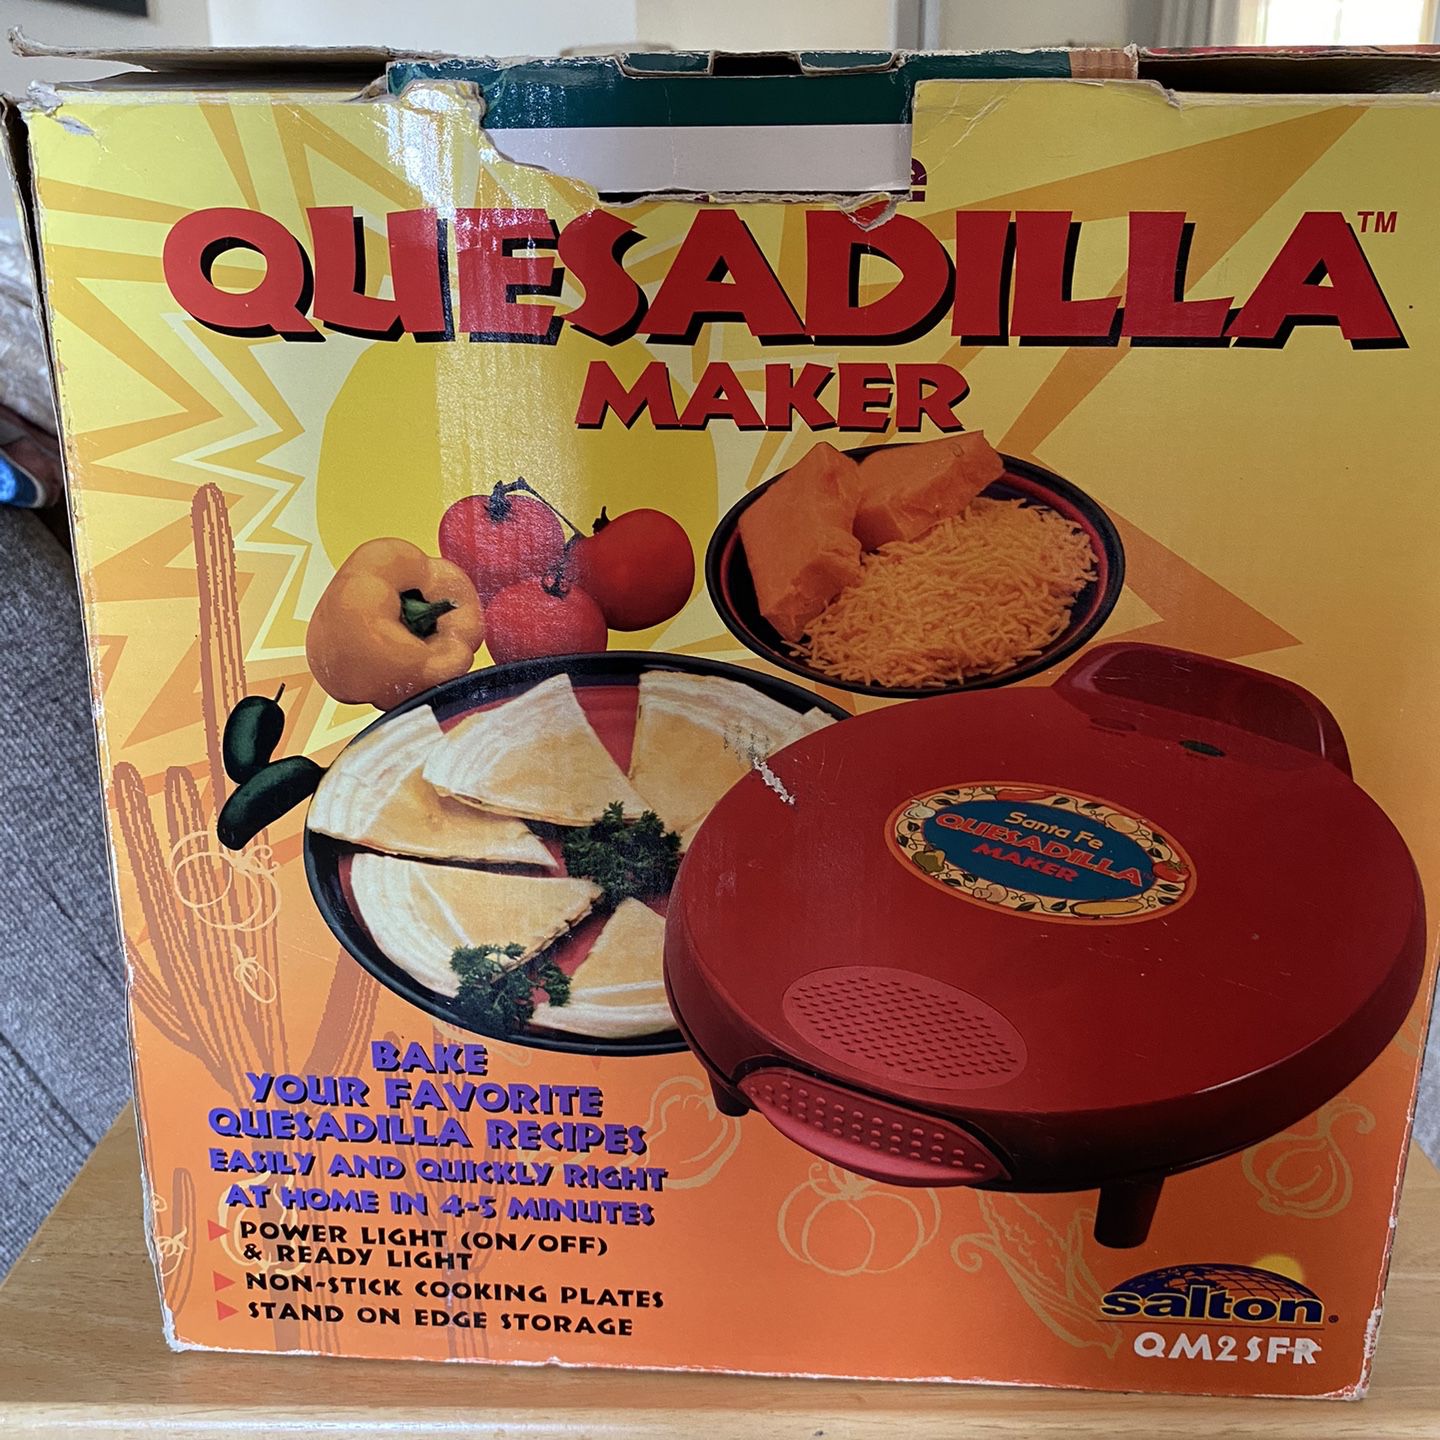  Santa Fe Quesadilla Maker: Home & Kitchen